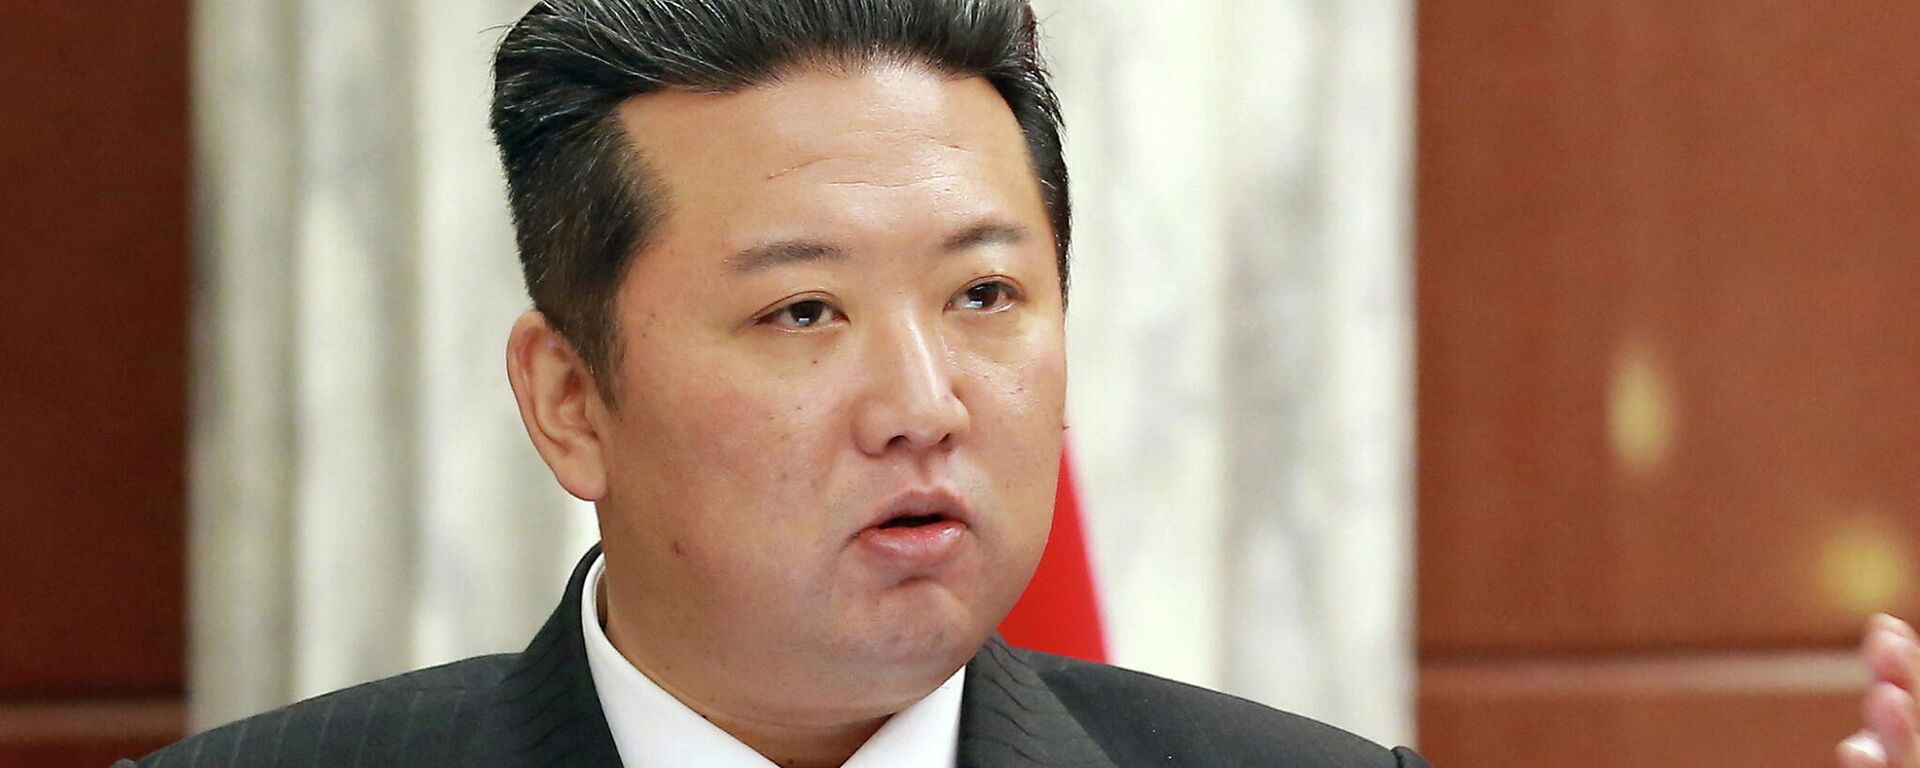 Kuzey Kore olarak bilinen Kore Demokratik Halk Cumhuriyeti'nin lideri Kim Jong Un, iktidardaki İşçi Partisi'nin Merkez Komitesi genel toplantısında konuşurken, hiç olmadığı kadar zayıflamış göründü.  - Sputnik Türkiye, 1920, 01.01.2022